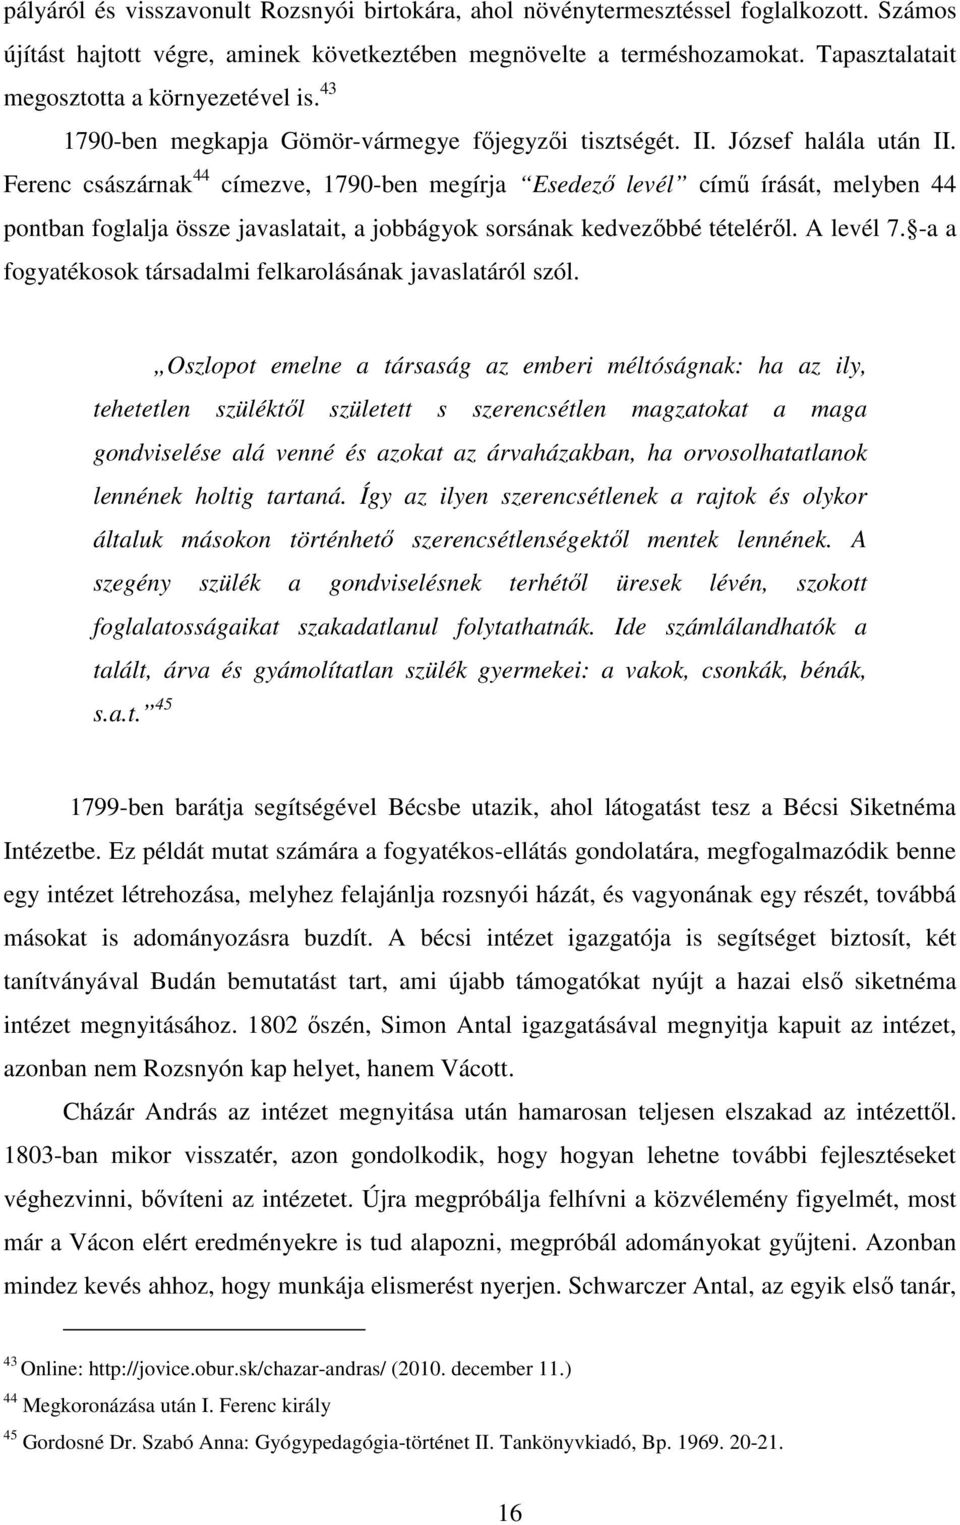 Ferenc császárnak 44 címezve, 1790-ben megírja Esedezı levél címő írását, melyben 44 pontban foglalja össze javaslatait, a jobbágyok sorsának kedvezıbbé tételérıl. A levél 7.